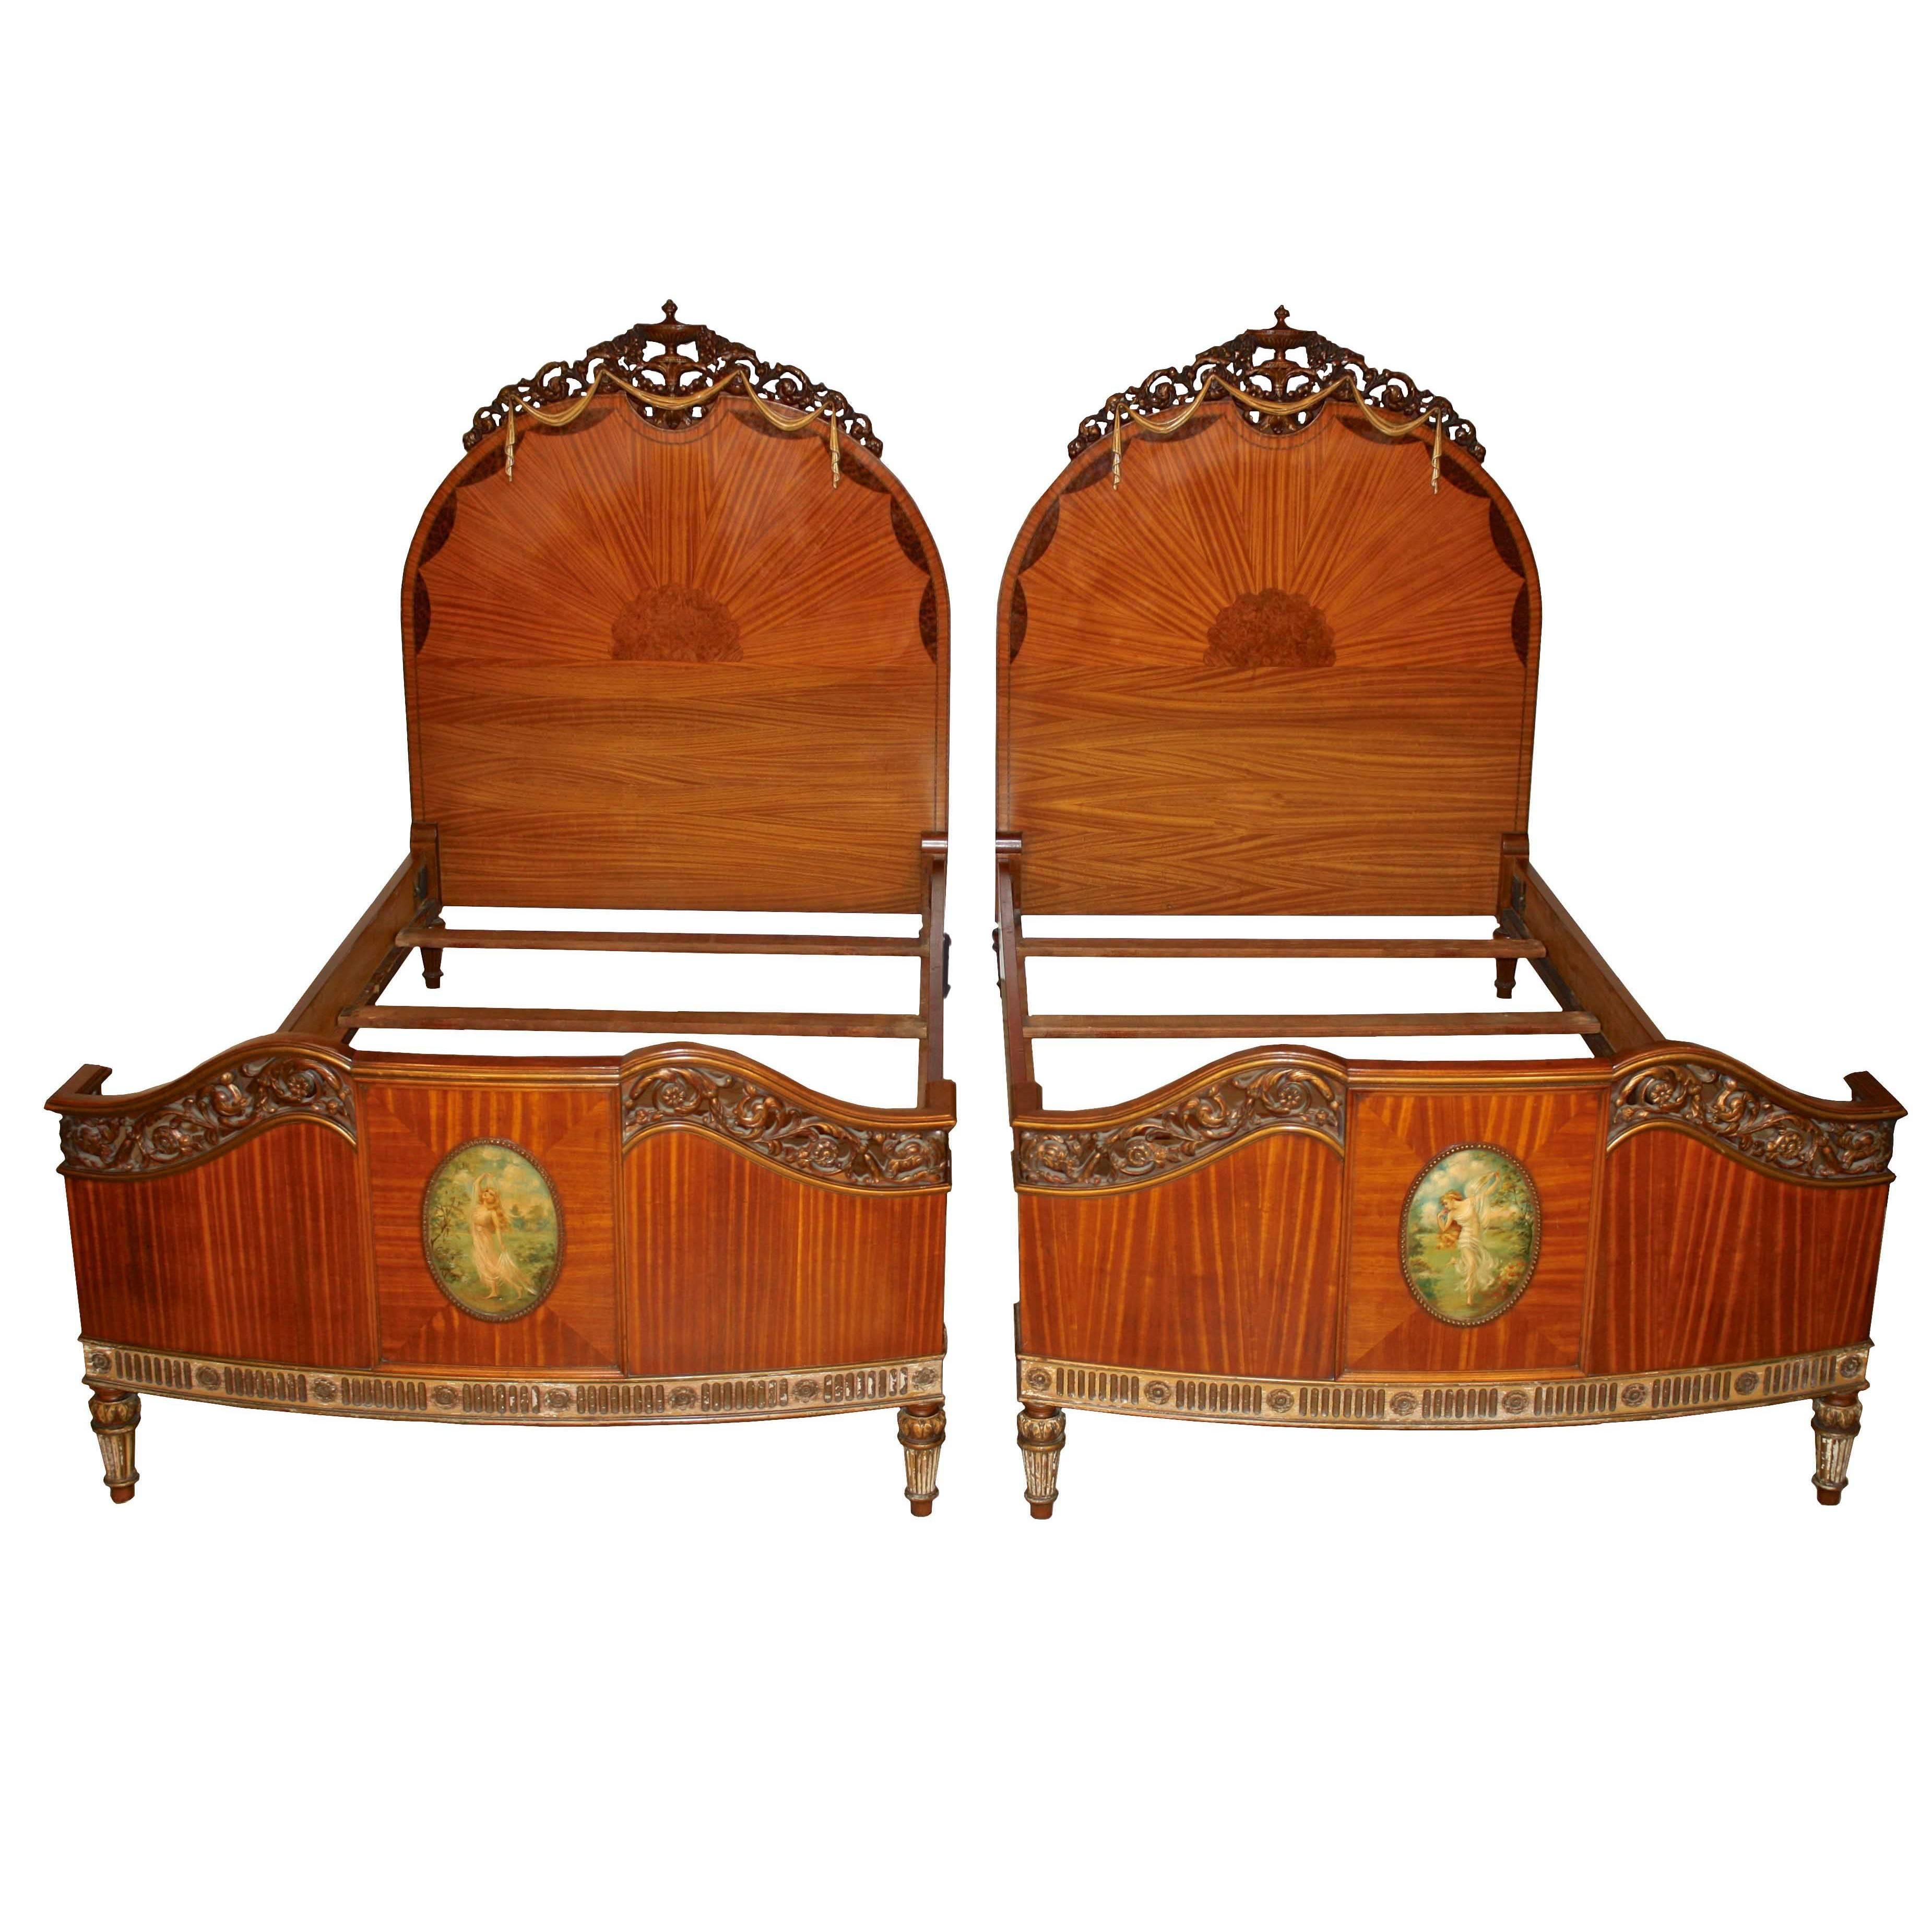 PAIR of Art Nouveau Beds